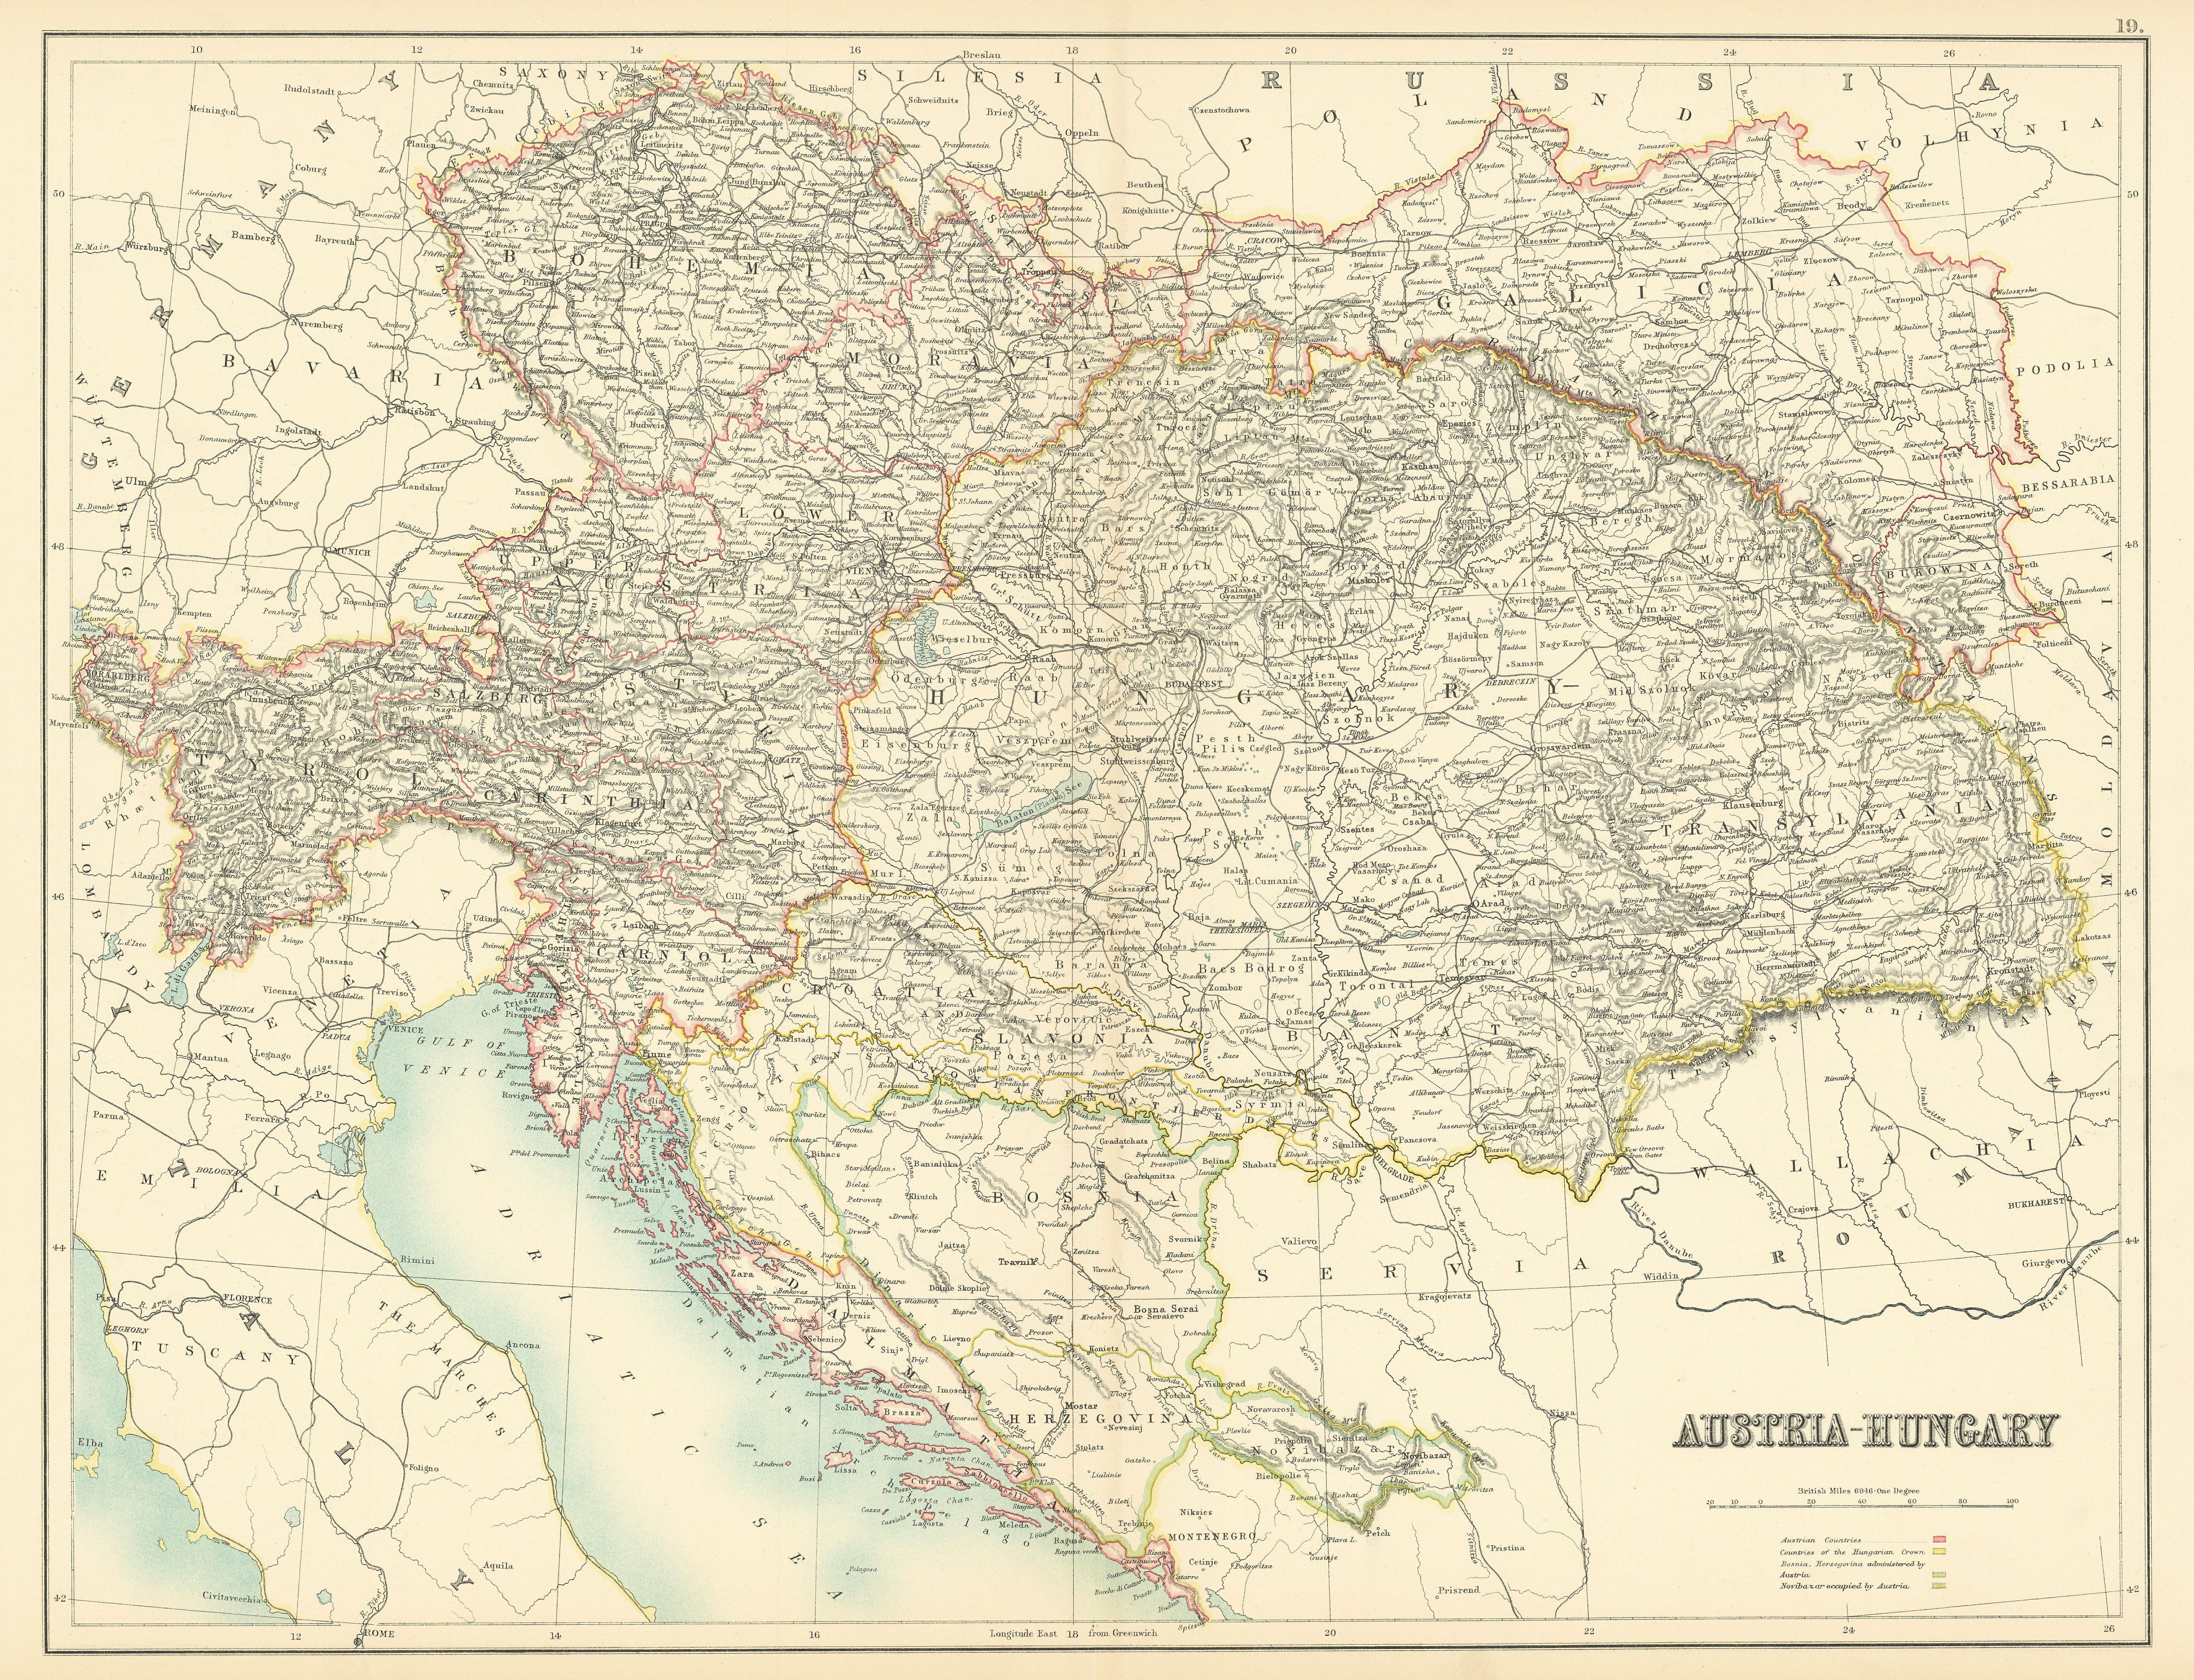 Austria-Hungary. Croatia Dalmatia Galicia Bosnia Bohemia. BARTHOLOMEW 1898 map